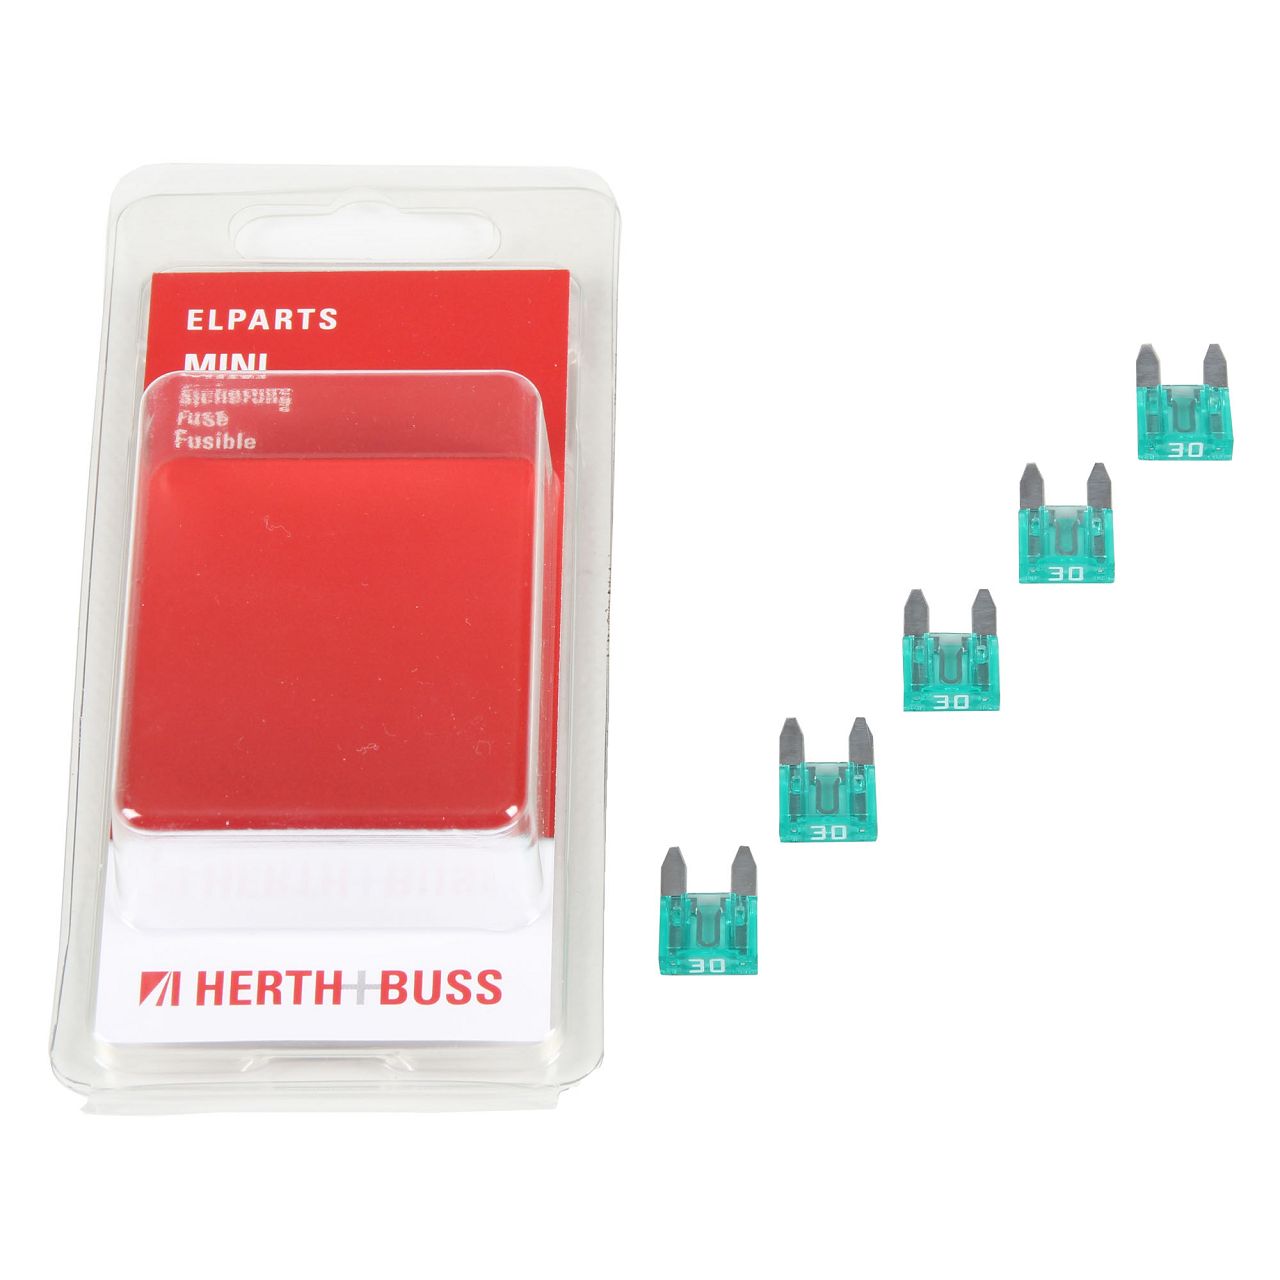 HERTH+BUSS ELPARTS KFZ Sicherungen - 50295581066 